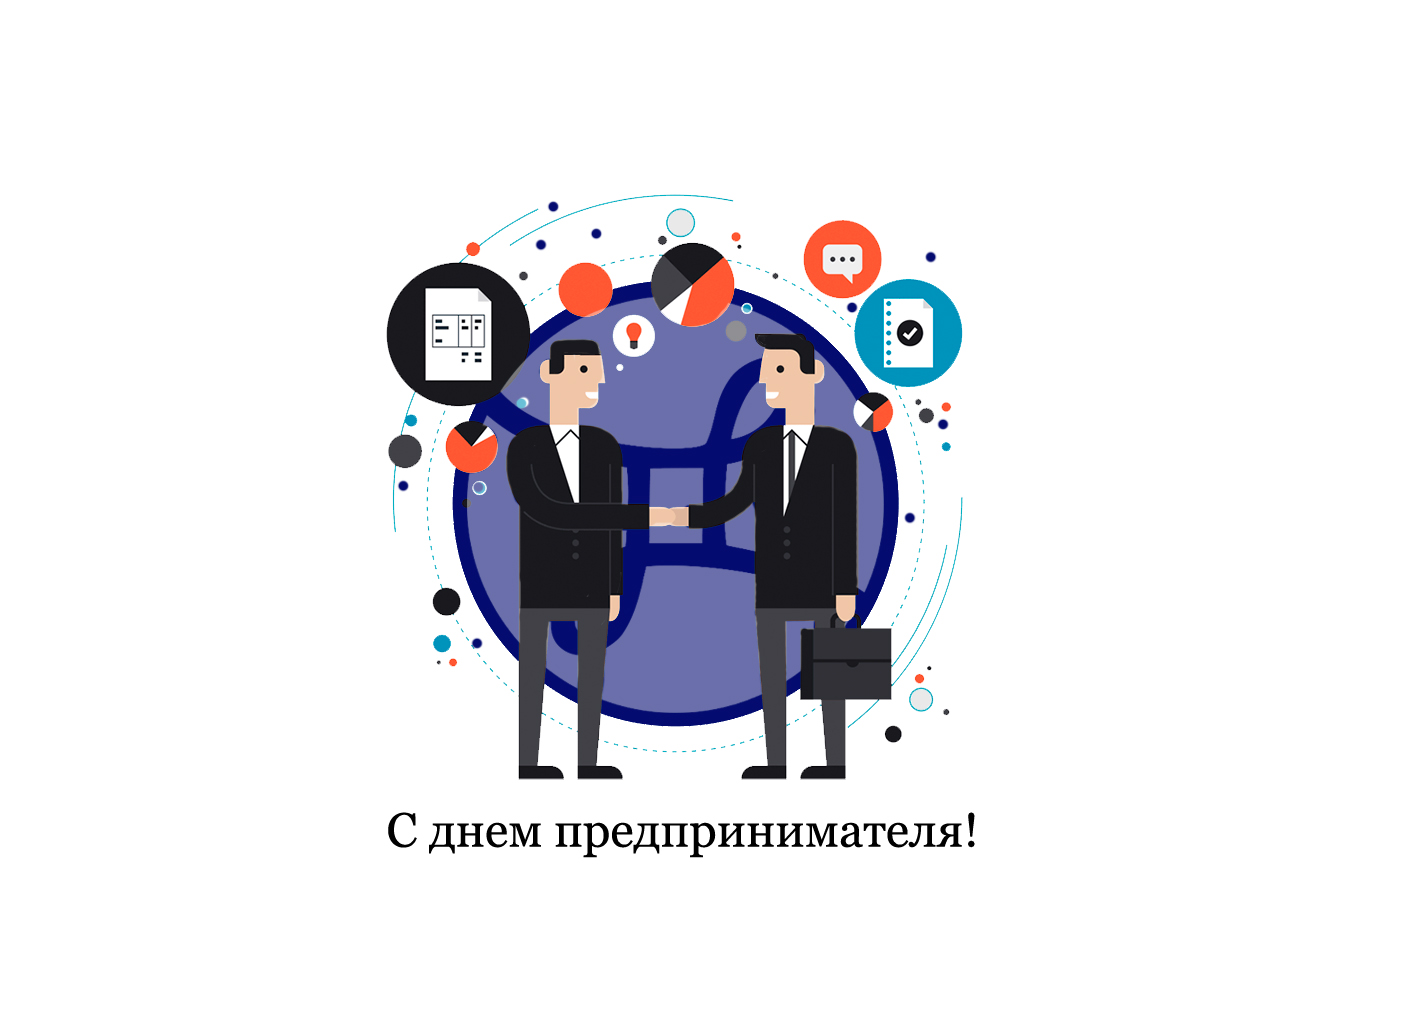 День предпринимателя Украины - дата празднования в 2022 г, история и традиции празднования